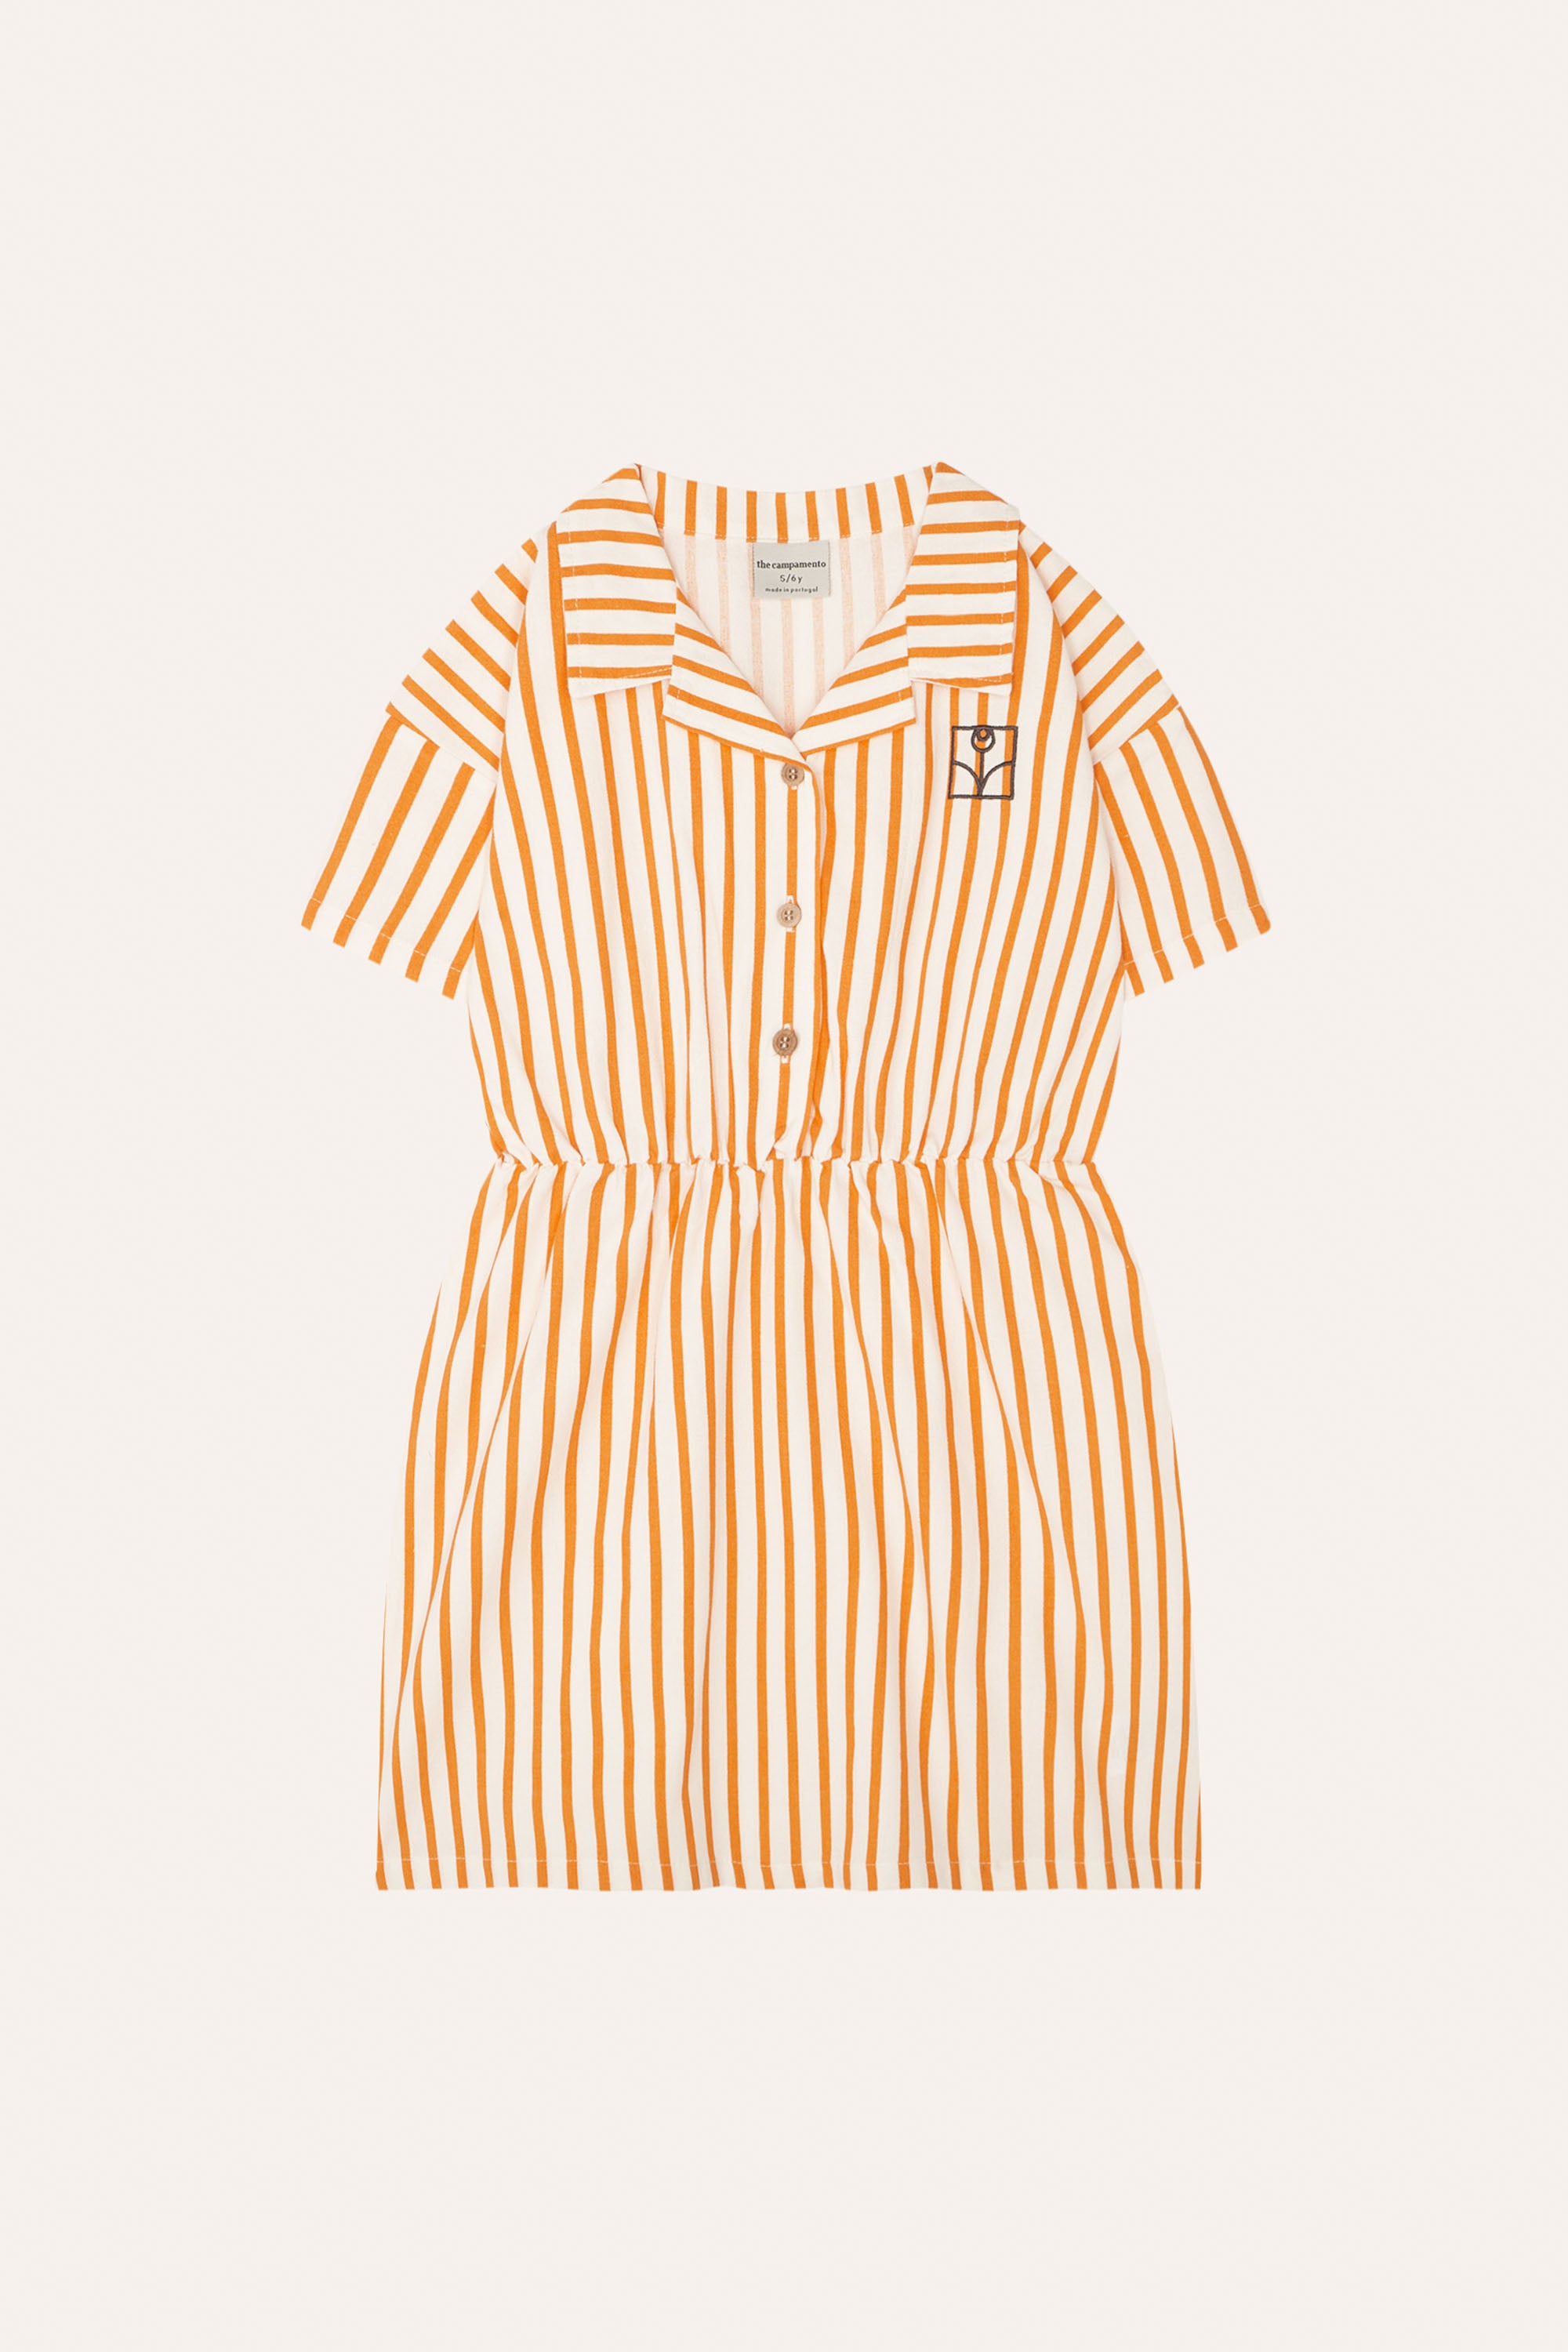 The Campamento - orange stripe kids dress